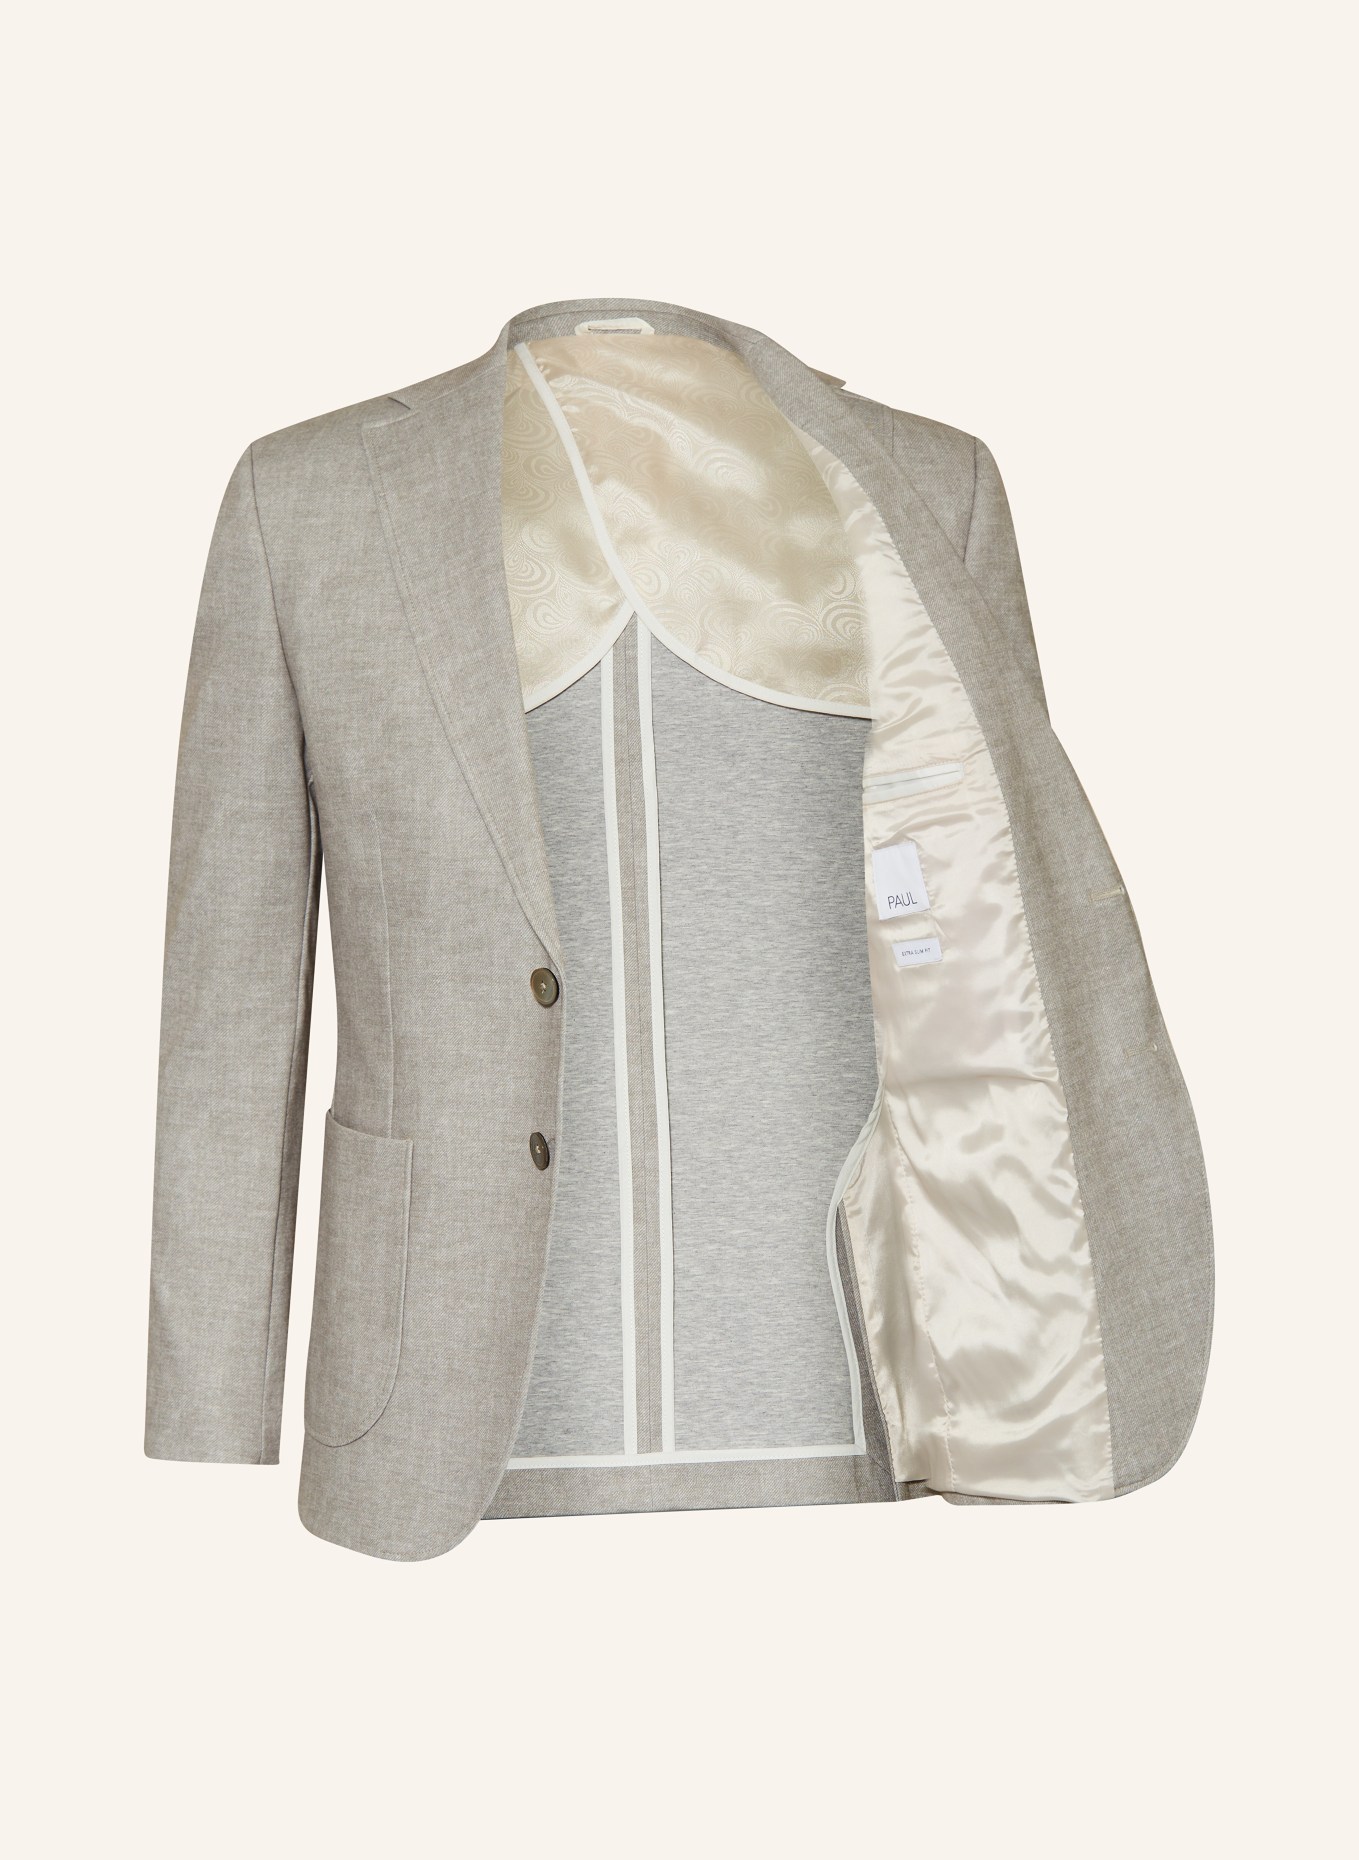 PAUL Suit jacket extra slim fit, Color: 220 SAND (Image 4)